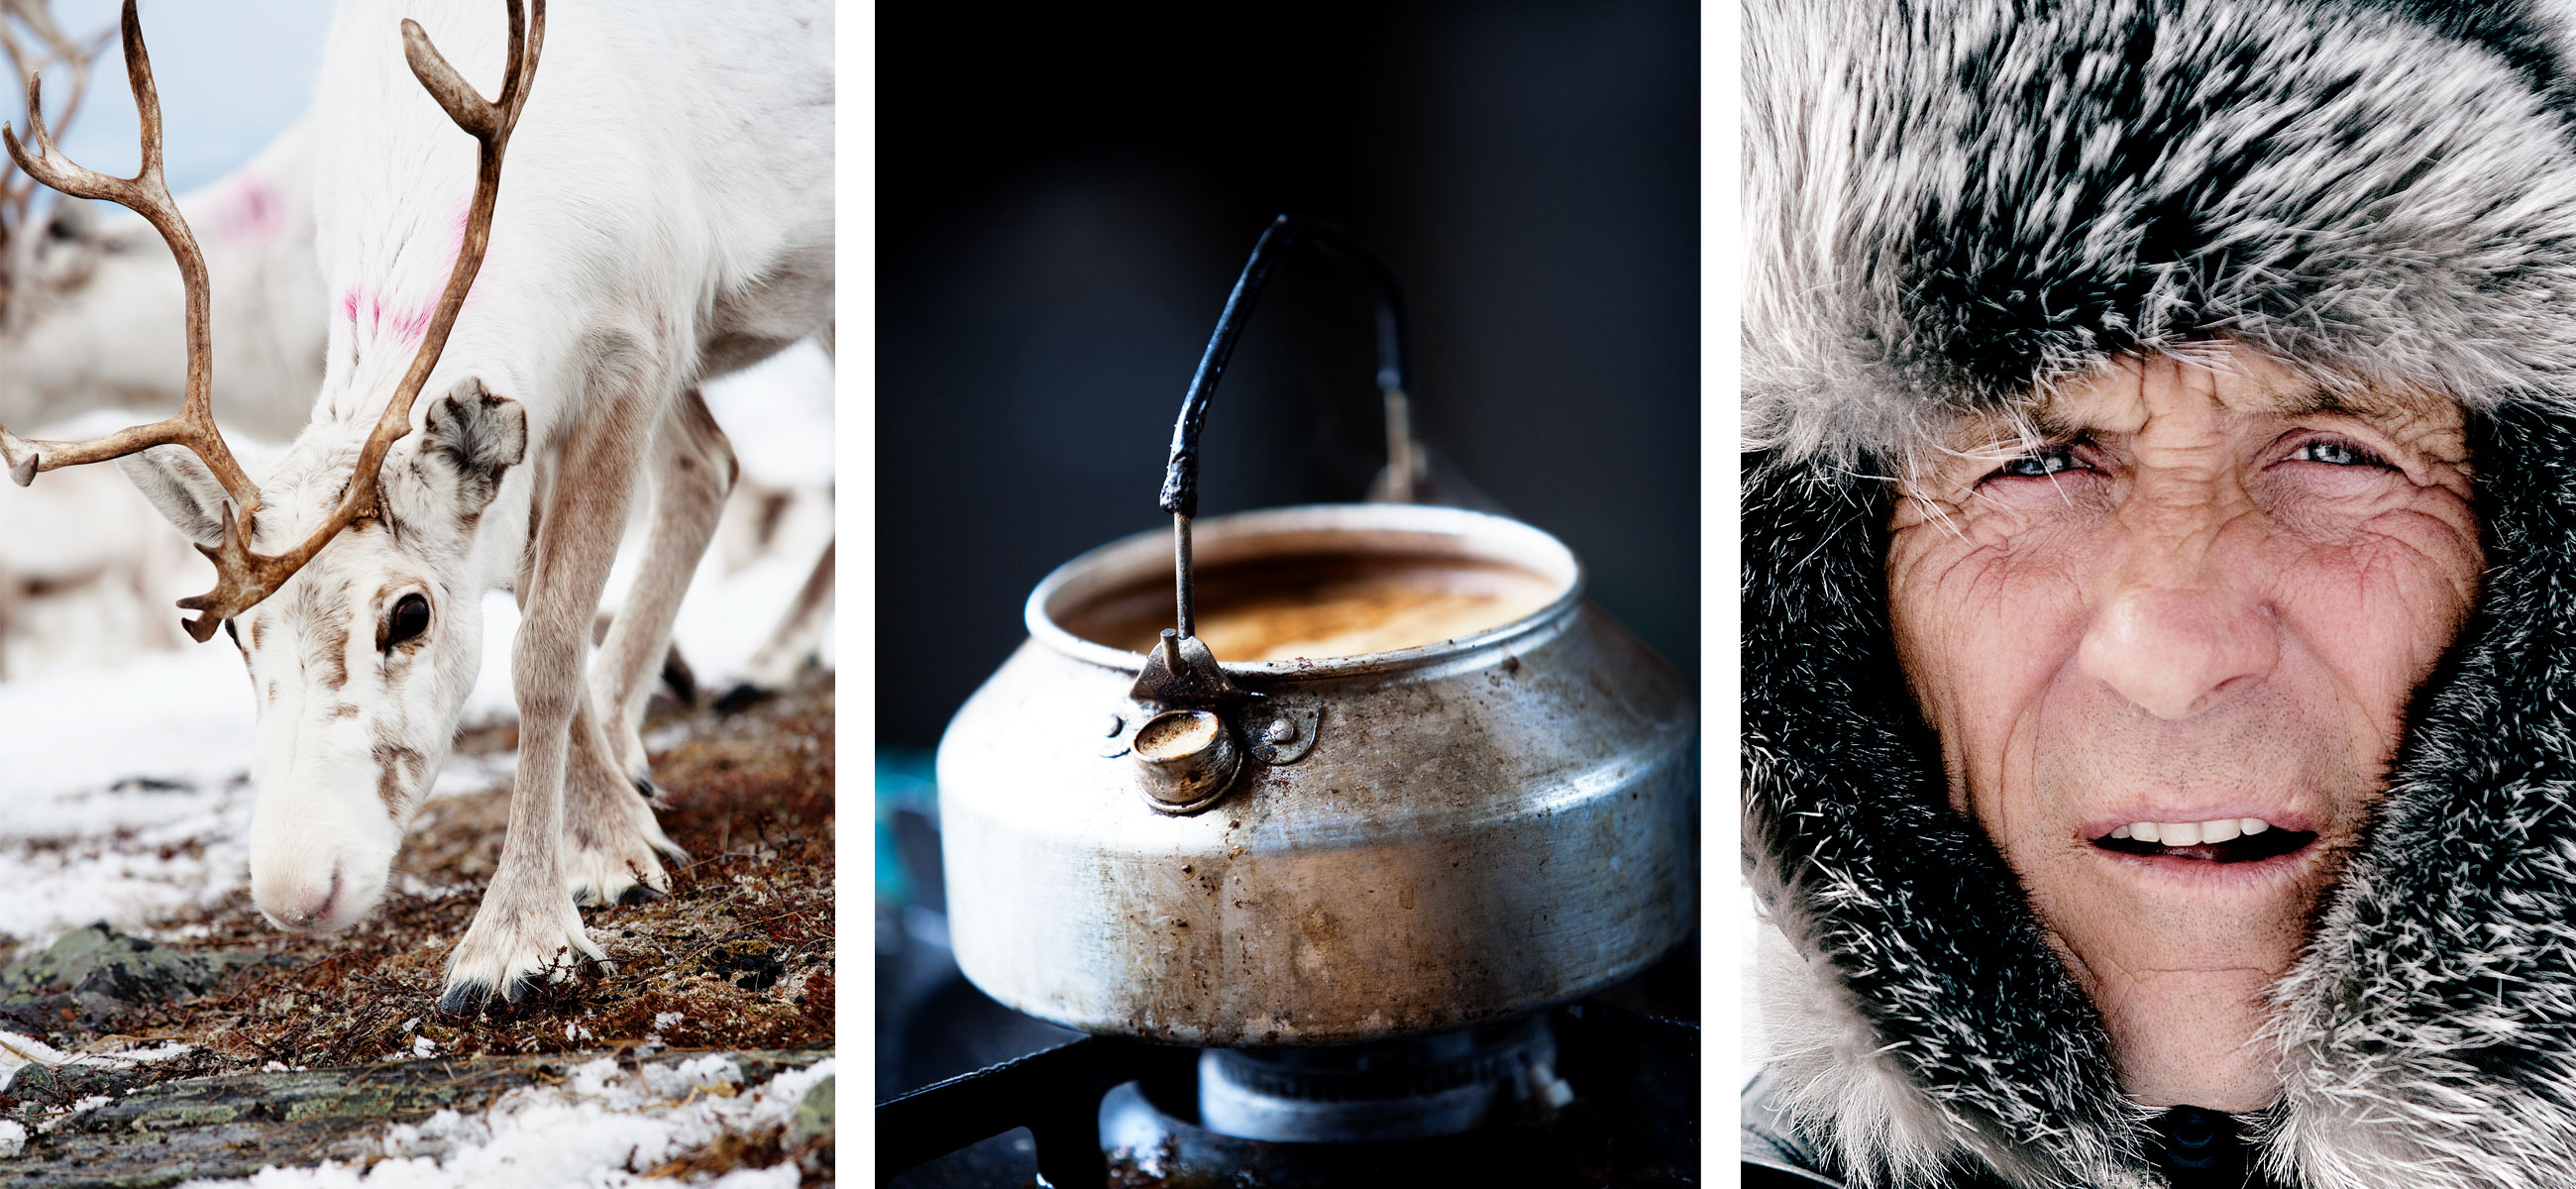 REIN Stemningsbilder fra vidda. Photos of reindeer, kettle and man.